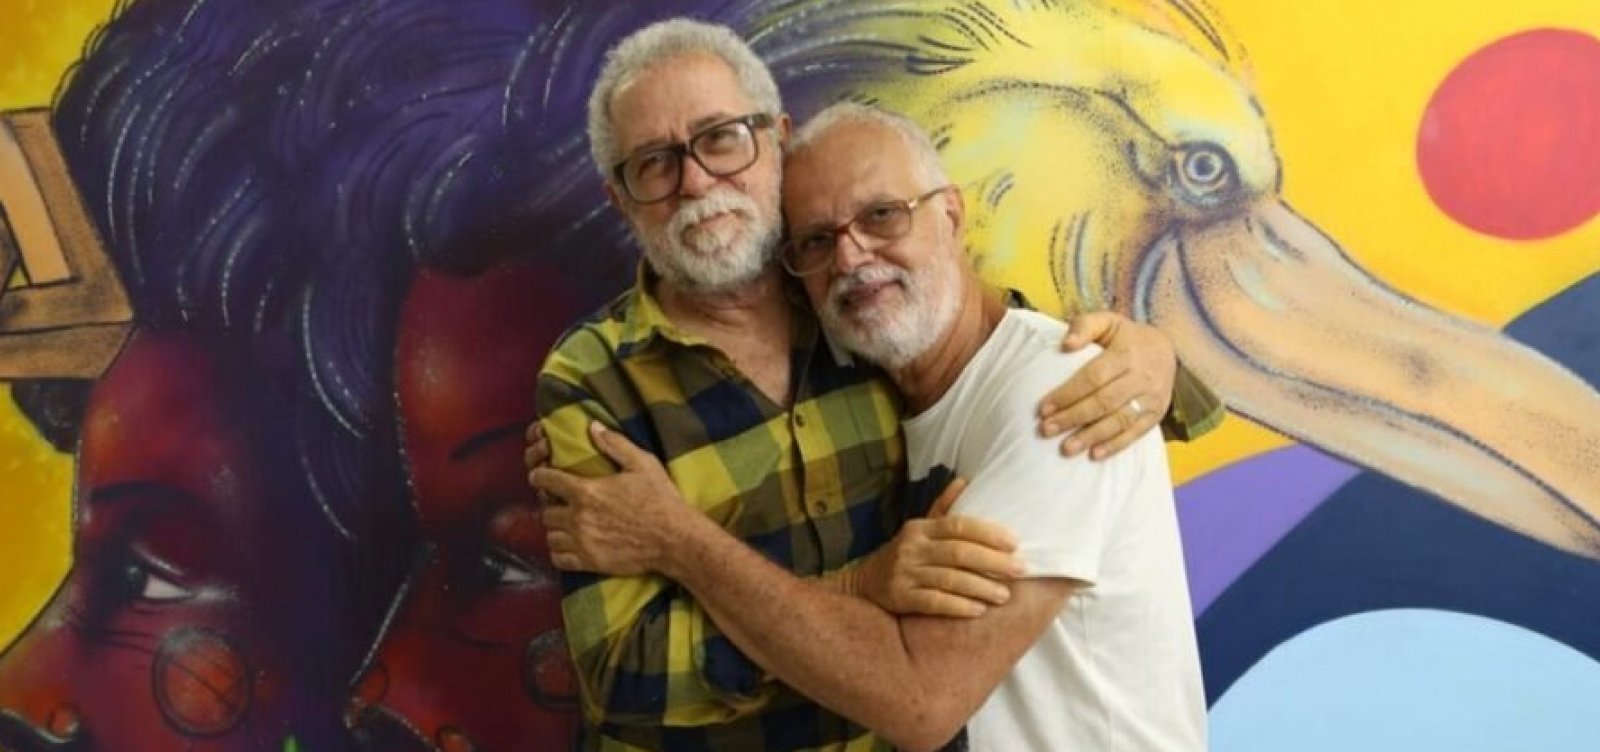 Roberto Mendes e Capinan celebram parceria com o show "Flor da Memória" nesta sexta